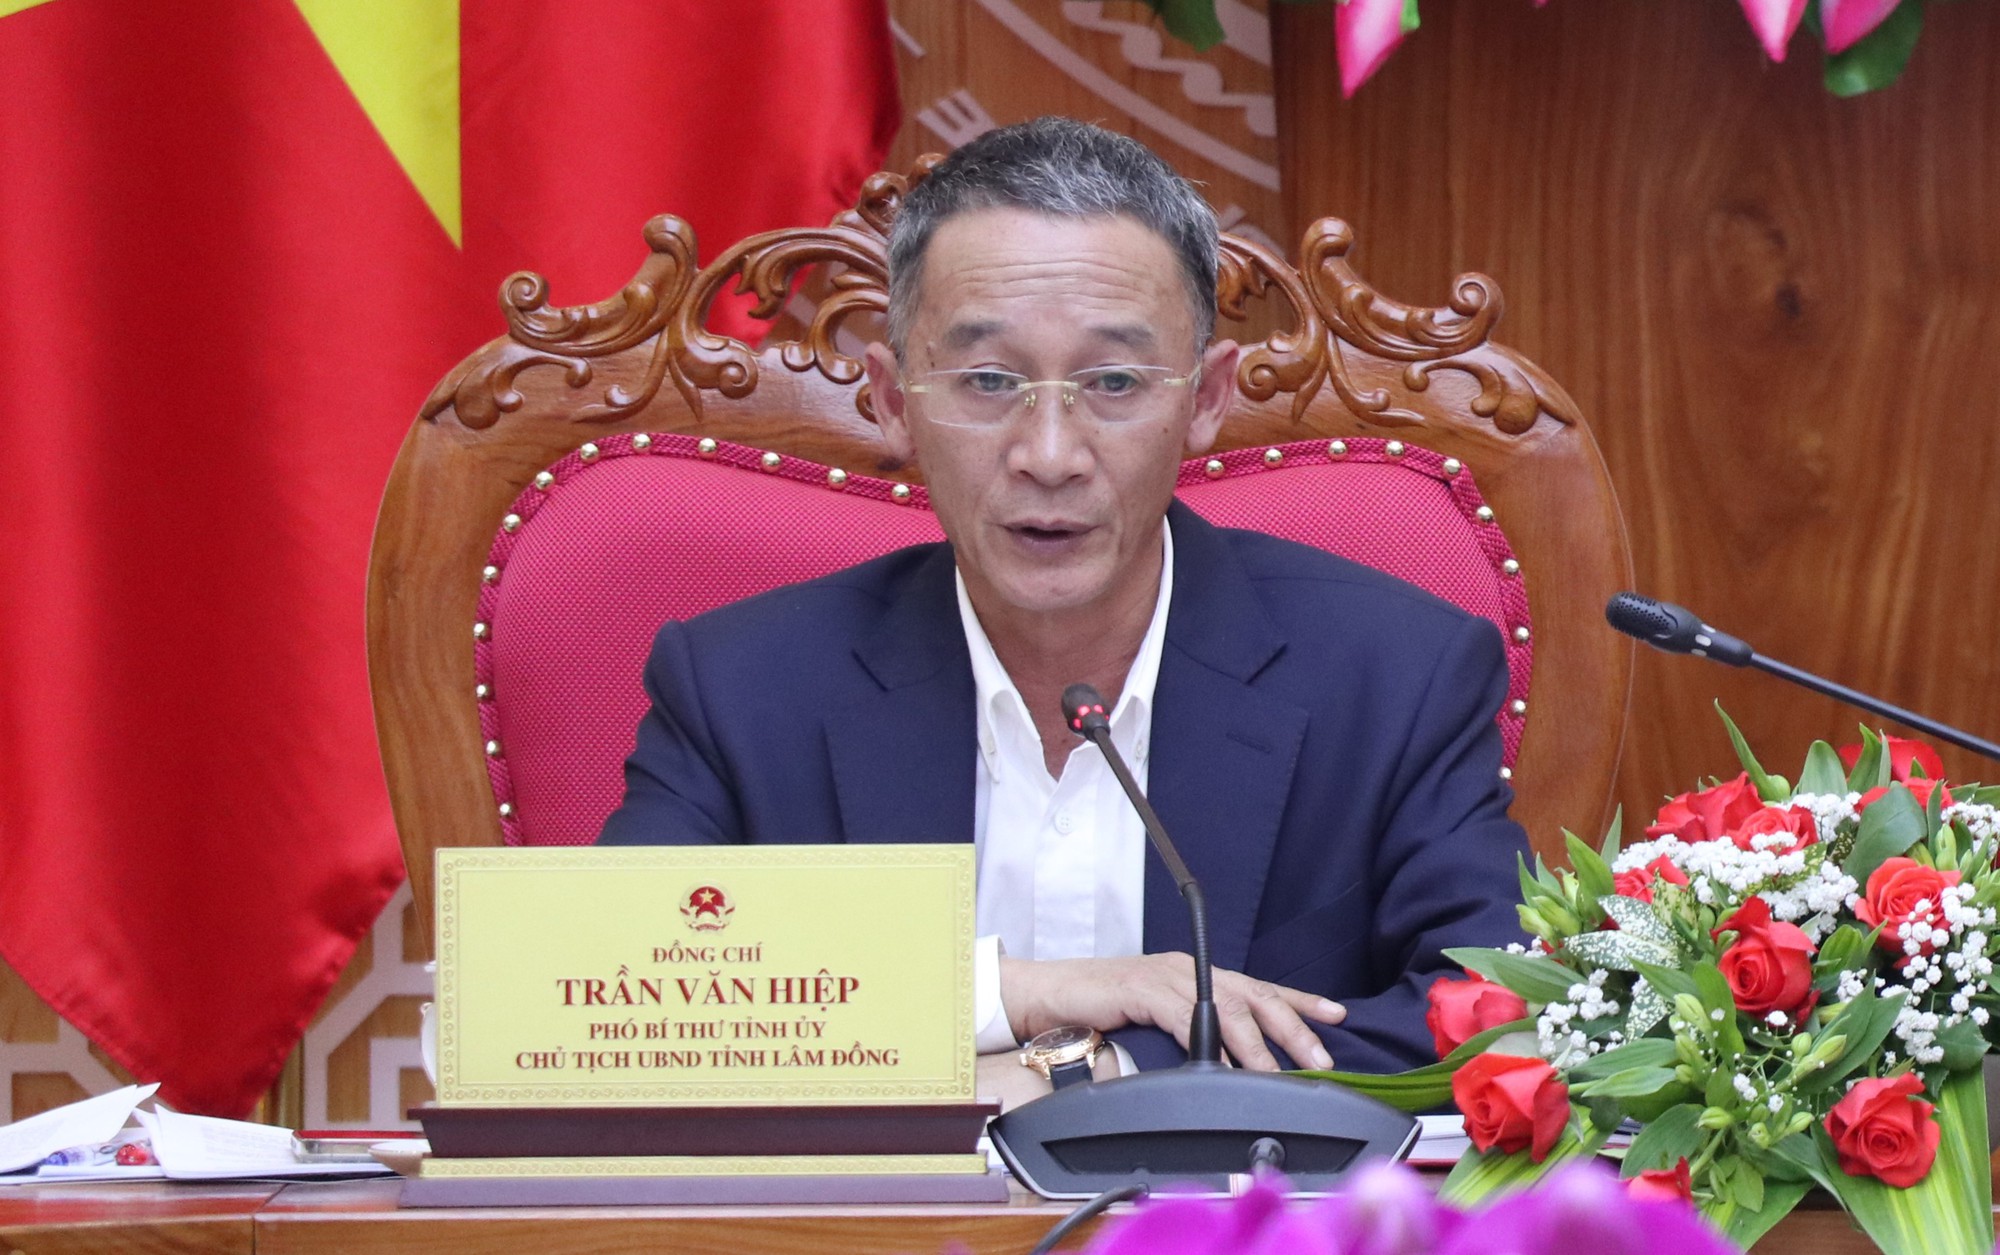 Công an đến nhà riêng của ông Trần Văn Hiệp - Chủ tịch UBND tỉnh Lâm Đồng- Ảnh 3.